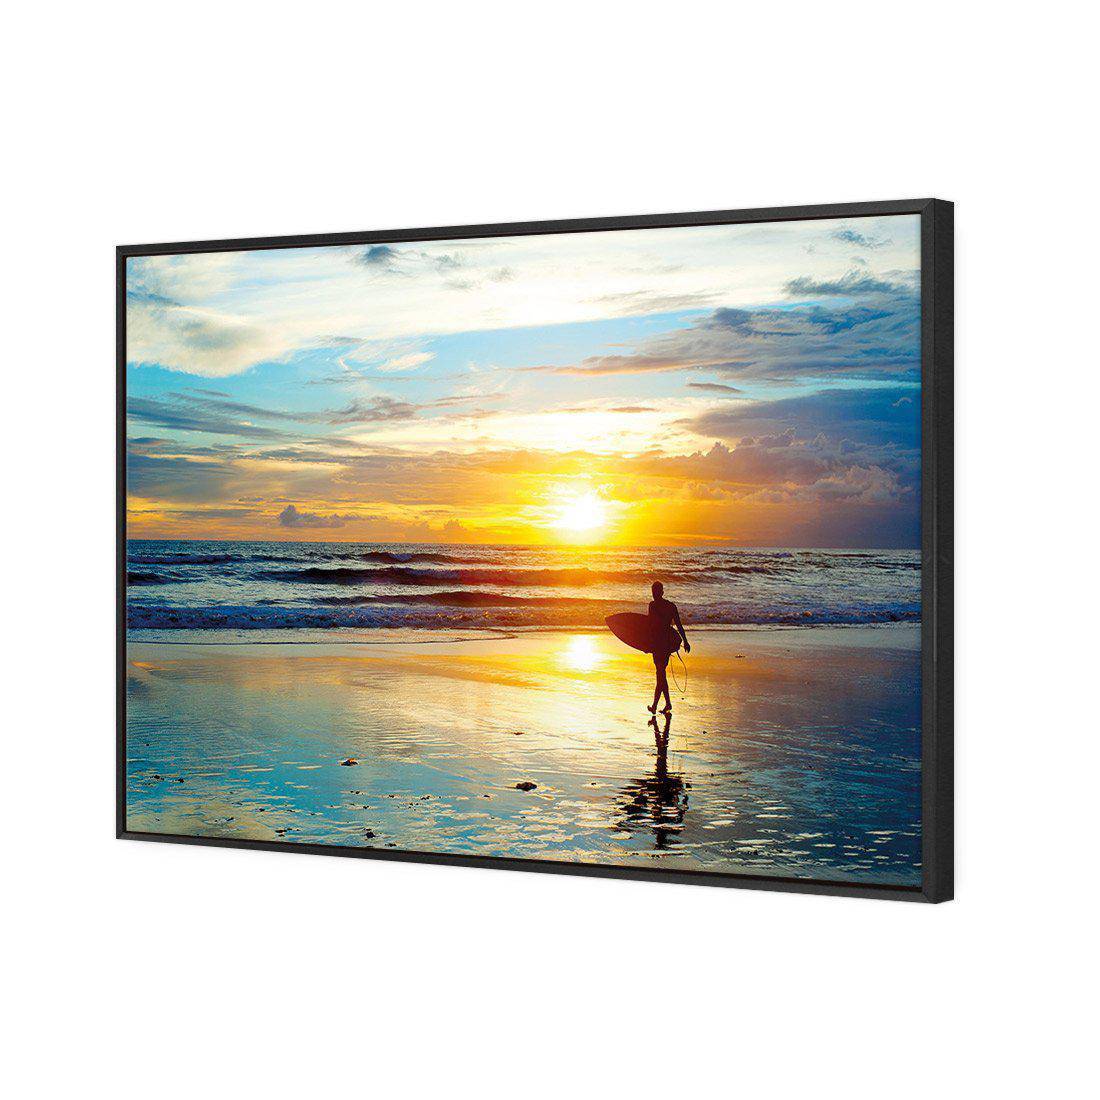 Sunset Surf Canvas Art-Canvas-Wall Art Designs-45x30cm-Canvas - Black Frame-Wall Art Designs